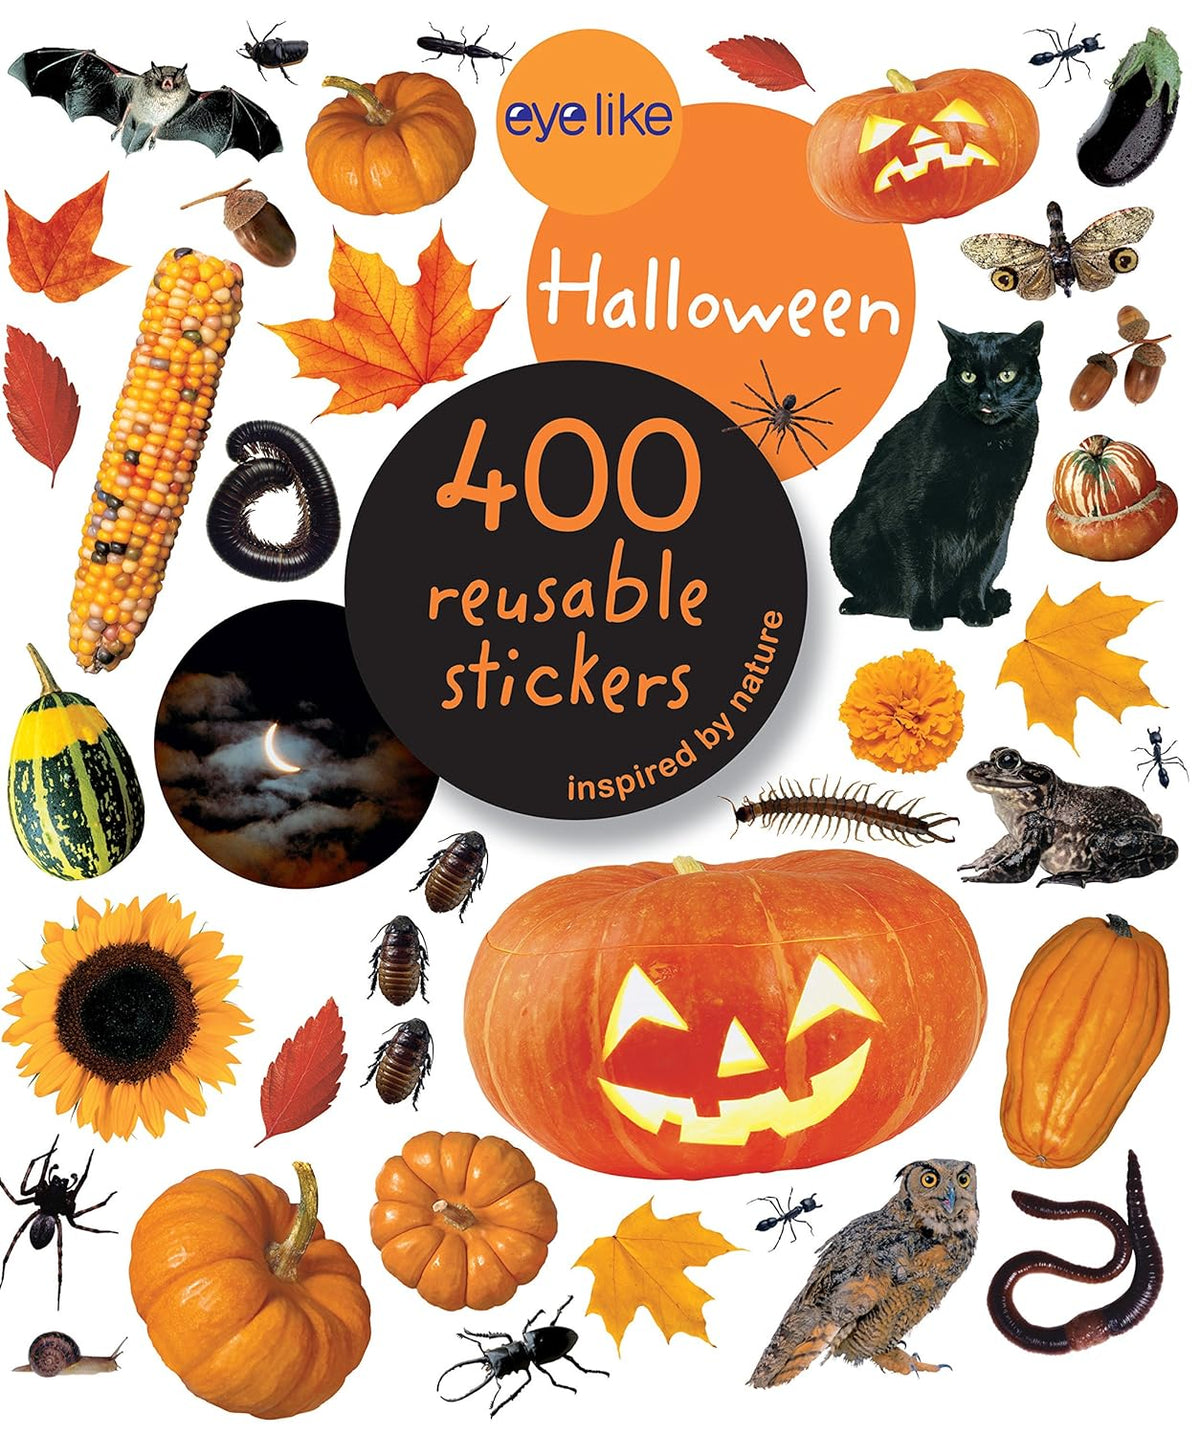 Eyelike Halloween 400 Reusable Stickers